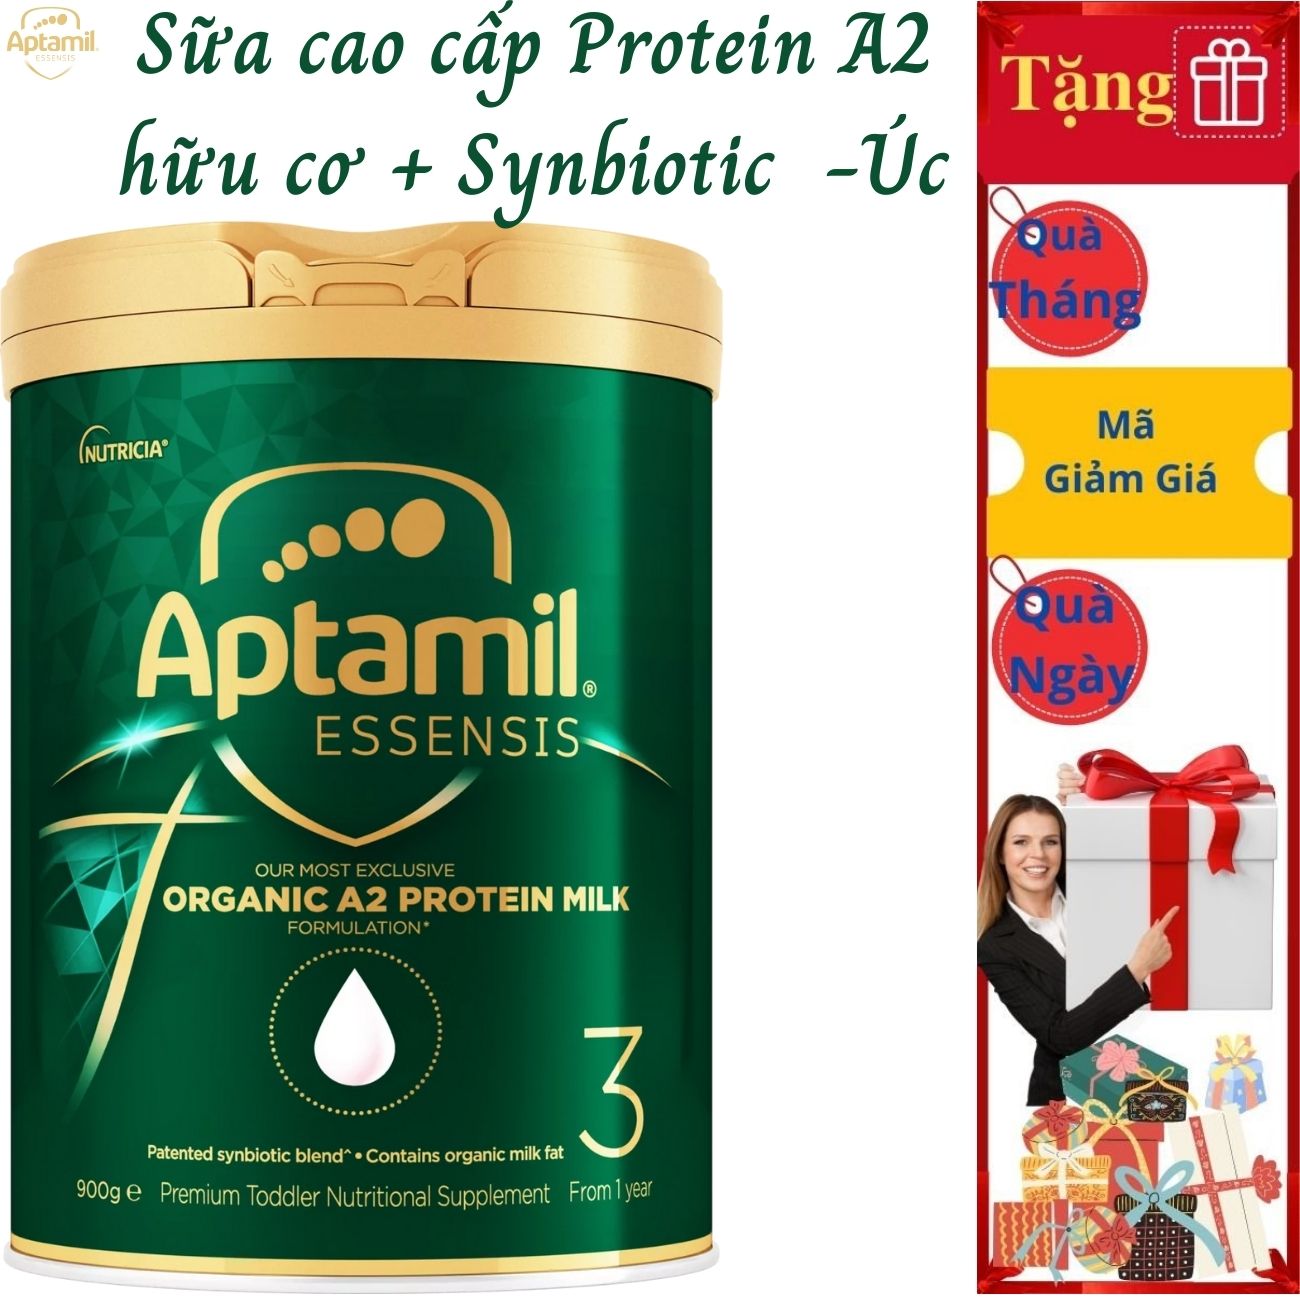 Sữa tăng chiều cao cho trẻ từ 1 tuổi Aptamil Essensis Protein A2 Úc (Số 3)- Công thức Synbiotic độc quyền Giúp tăng cường hệ miễn dịch, hỗ trợ hệ tiêu hóa, Phát triển chiều cao, Cân nặng, trí tuệ và tăng sức đề kháng (900g/hộp)